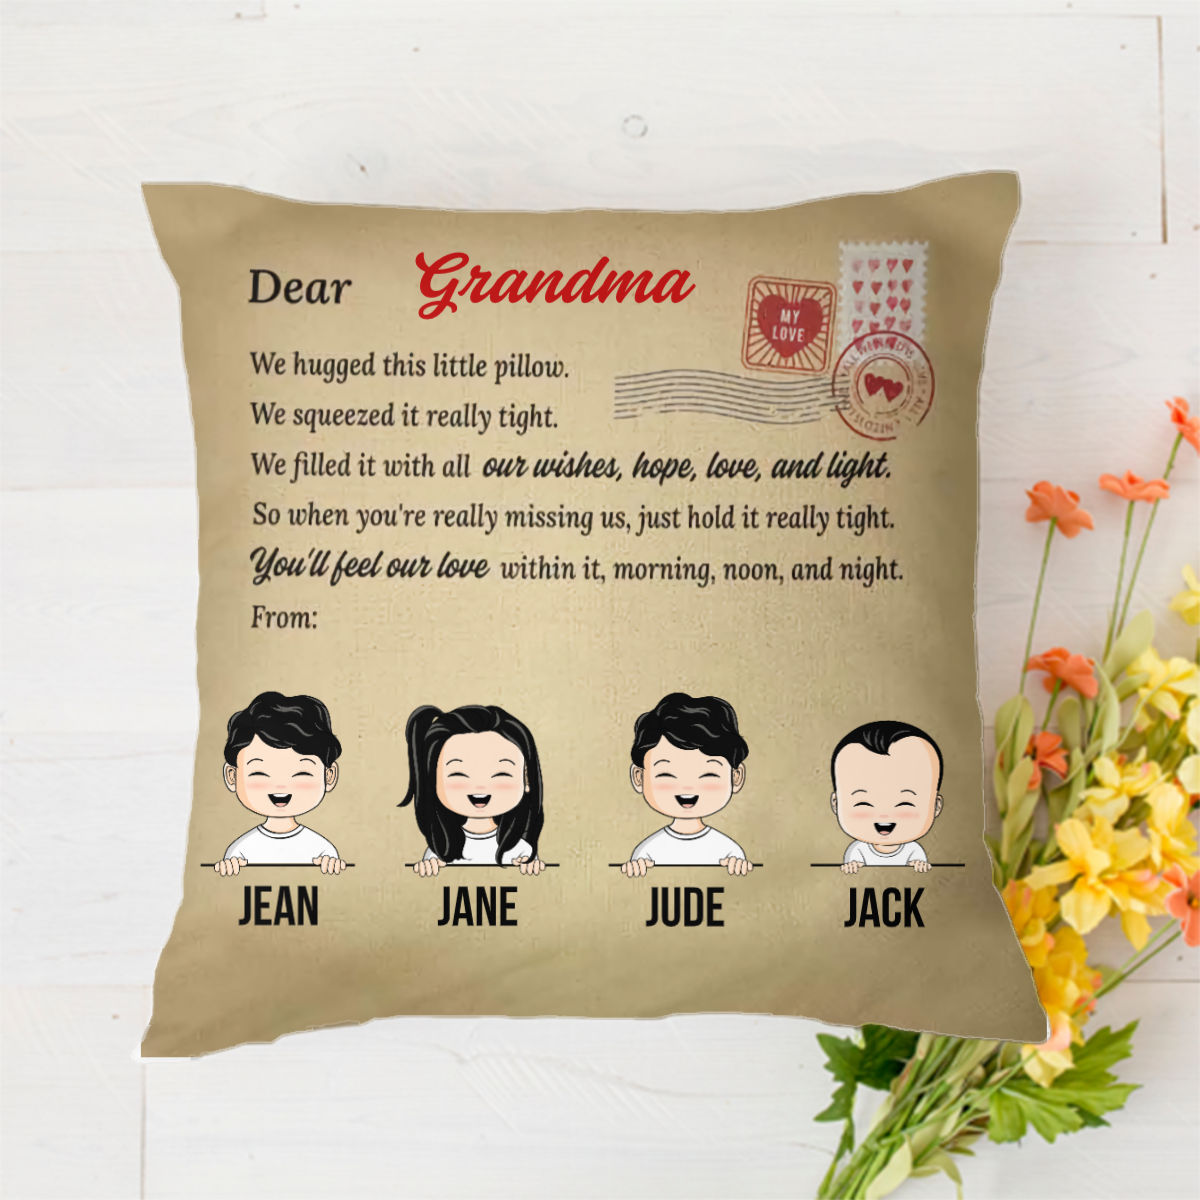 Grandma You'll Feel Our Love Within It - 母、祖母、叔母へのギフト - パーソナライズされたカスタム枕